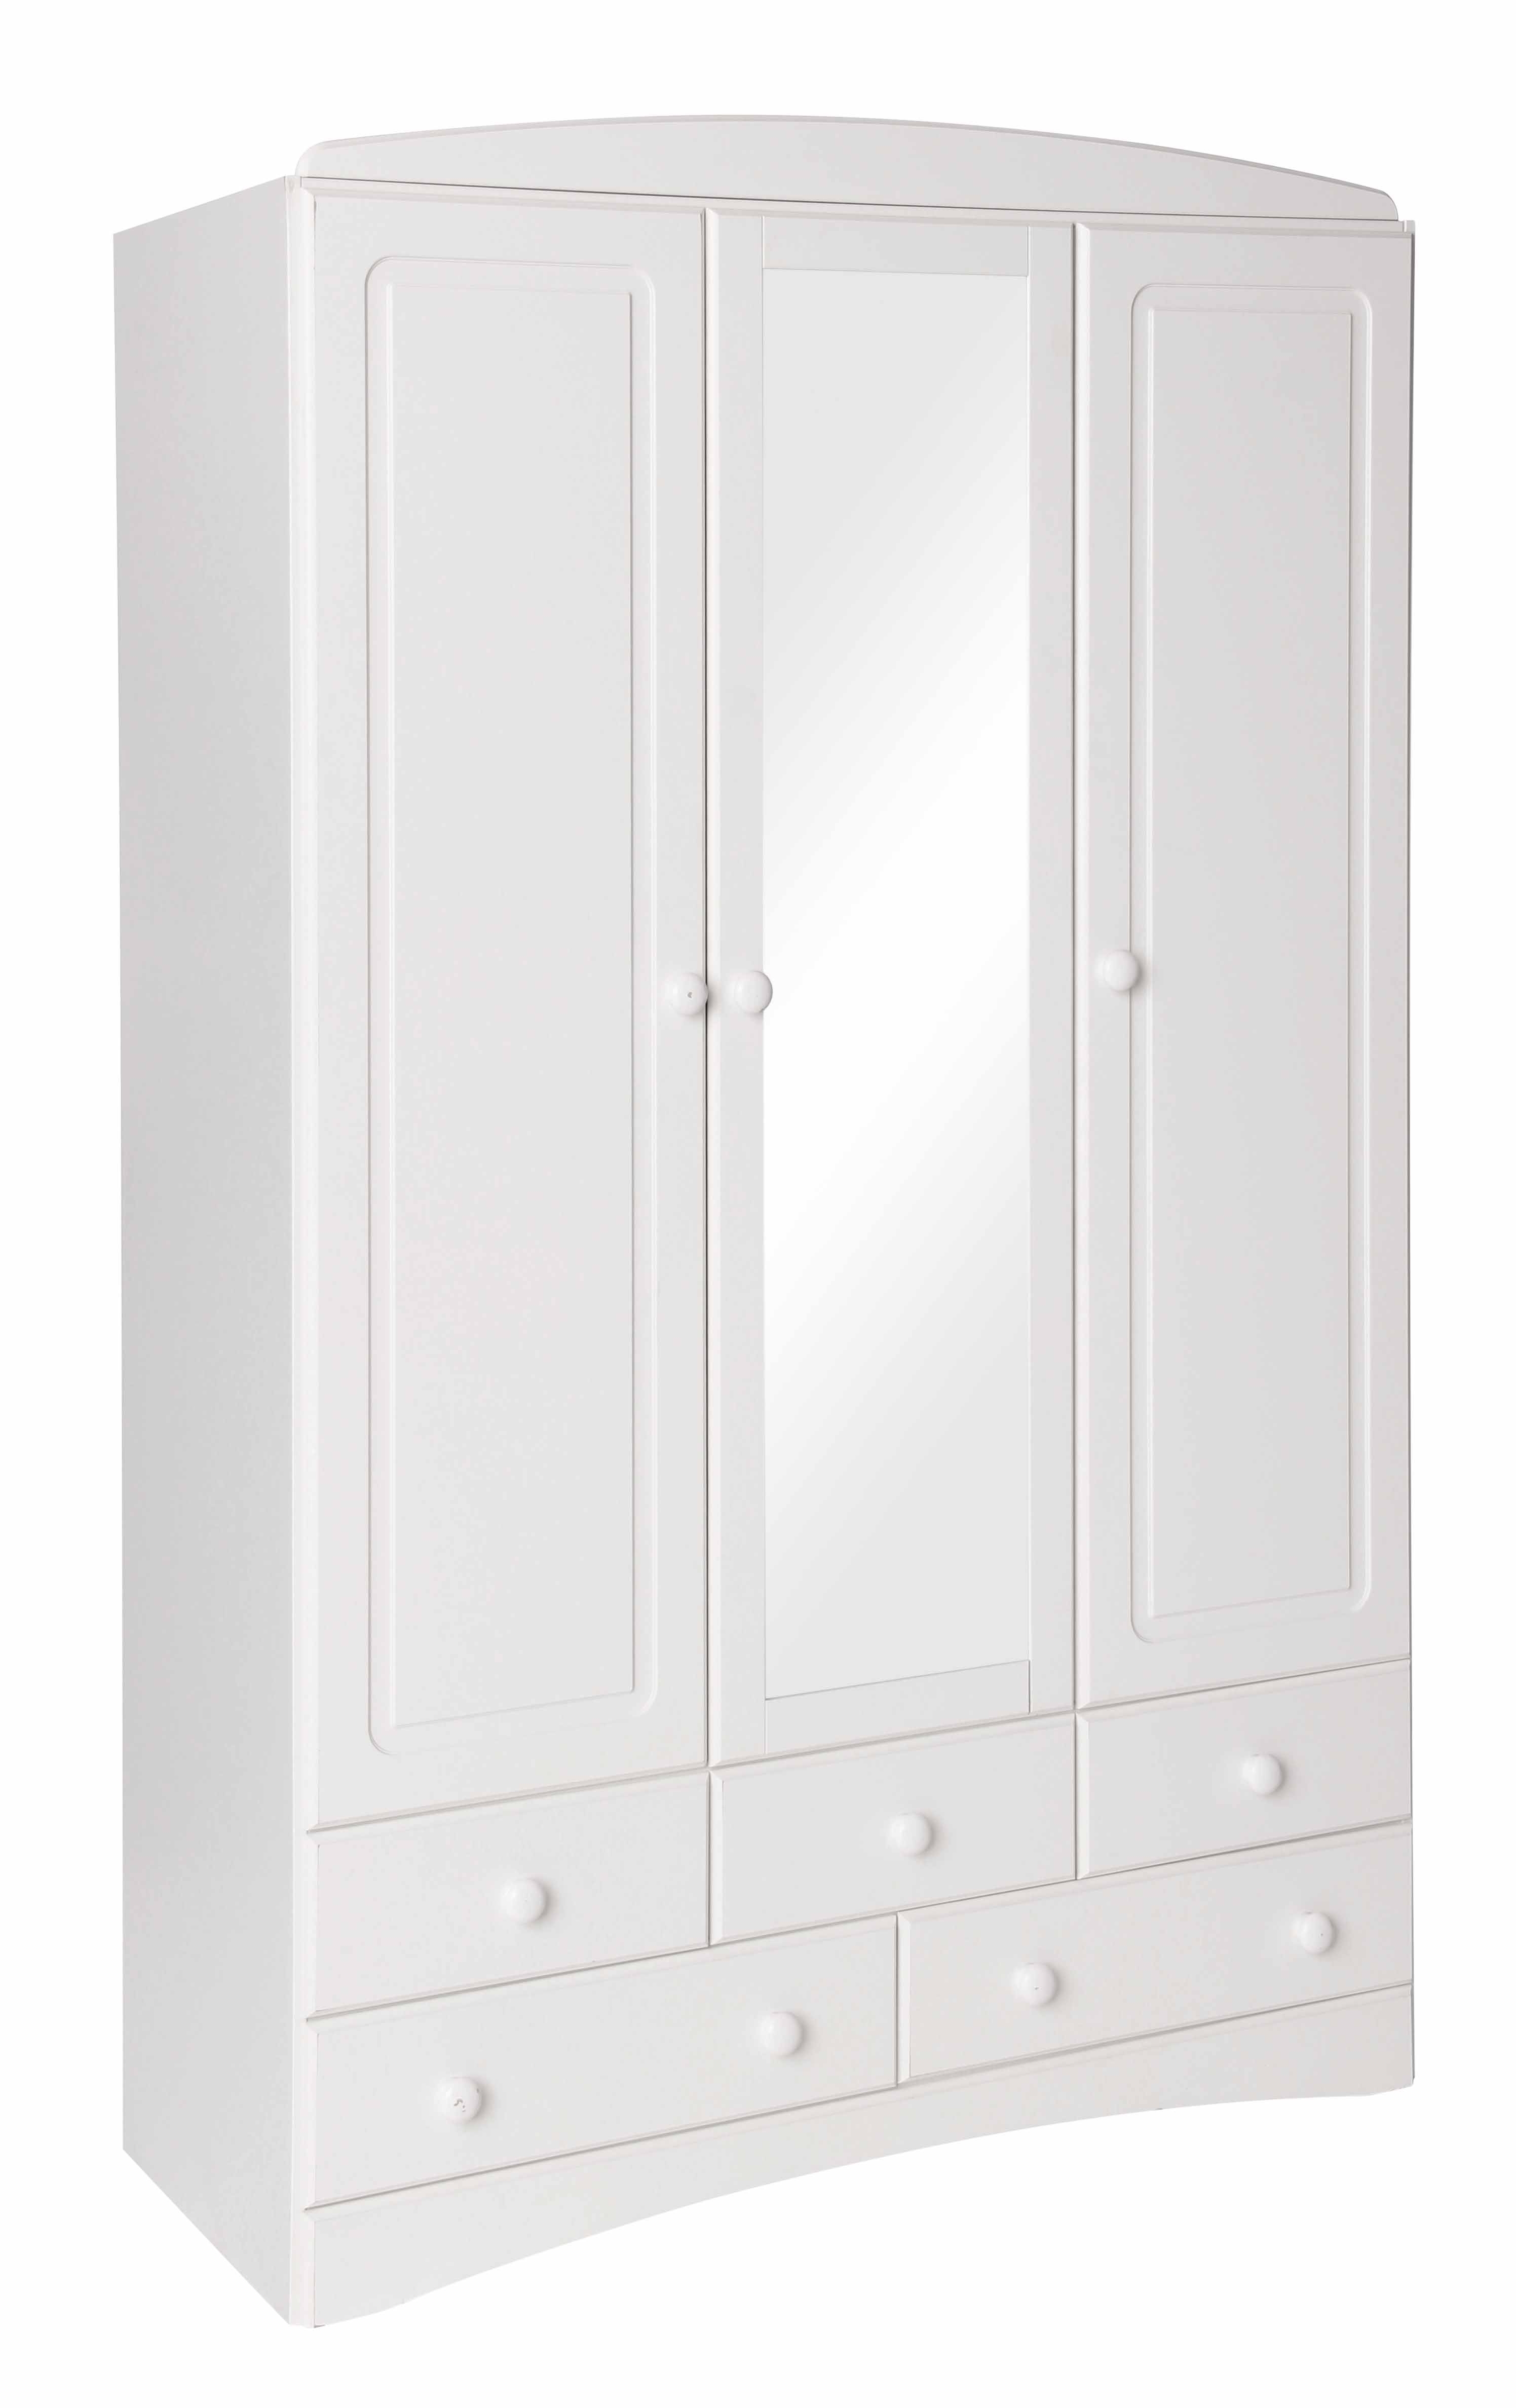 Unbranded Scandi White 3 Door 5 Drawer Wardrobe with Mirror